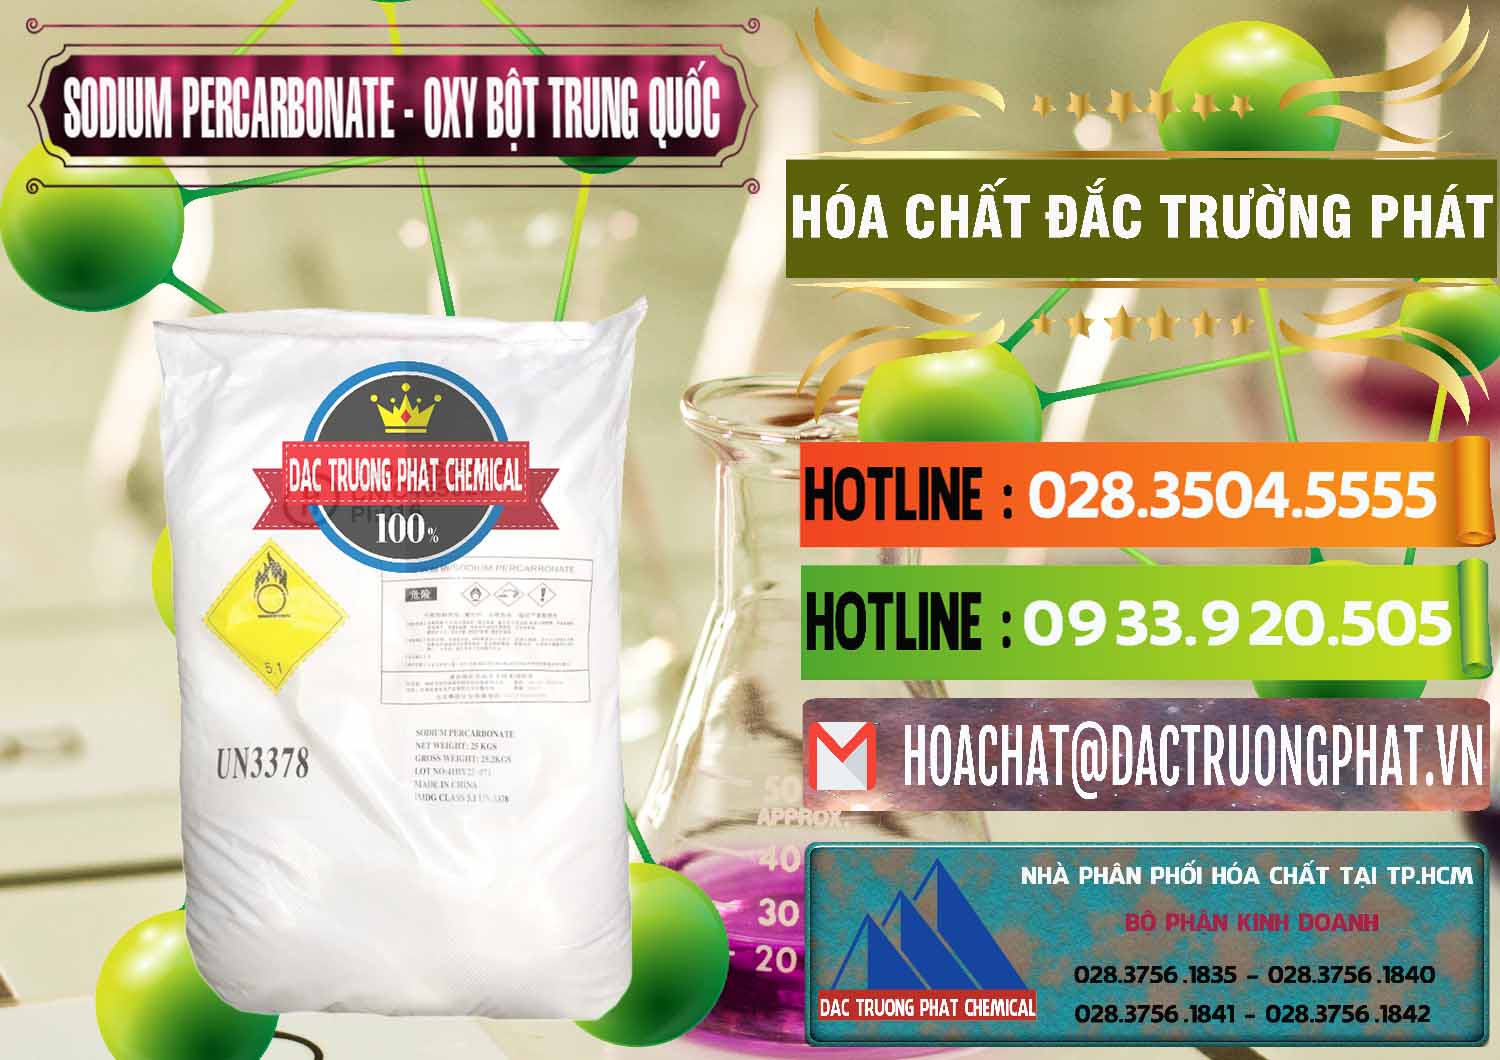 Cty cung ứng ( bán ) Sodium Percarbonate Dạng Bột Trung Quốc China - 0390 - Nơi chuyên nhập khẩu ( phân phối ) hóa chất tại TP.HCM - cungcaphoachat.com.vn